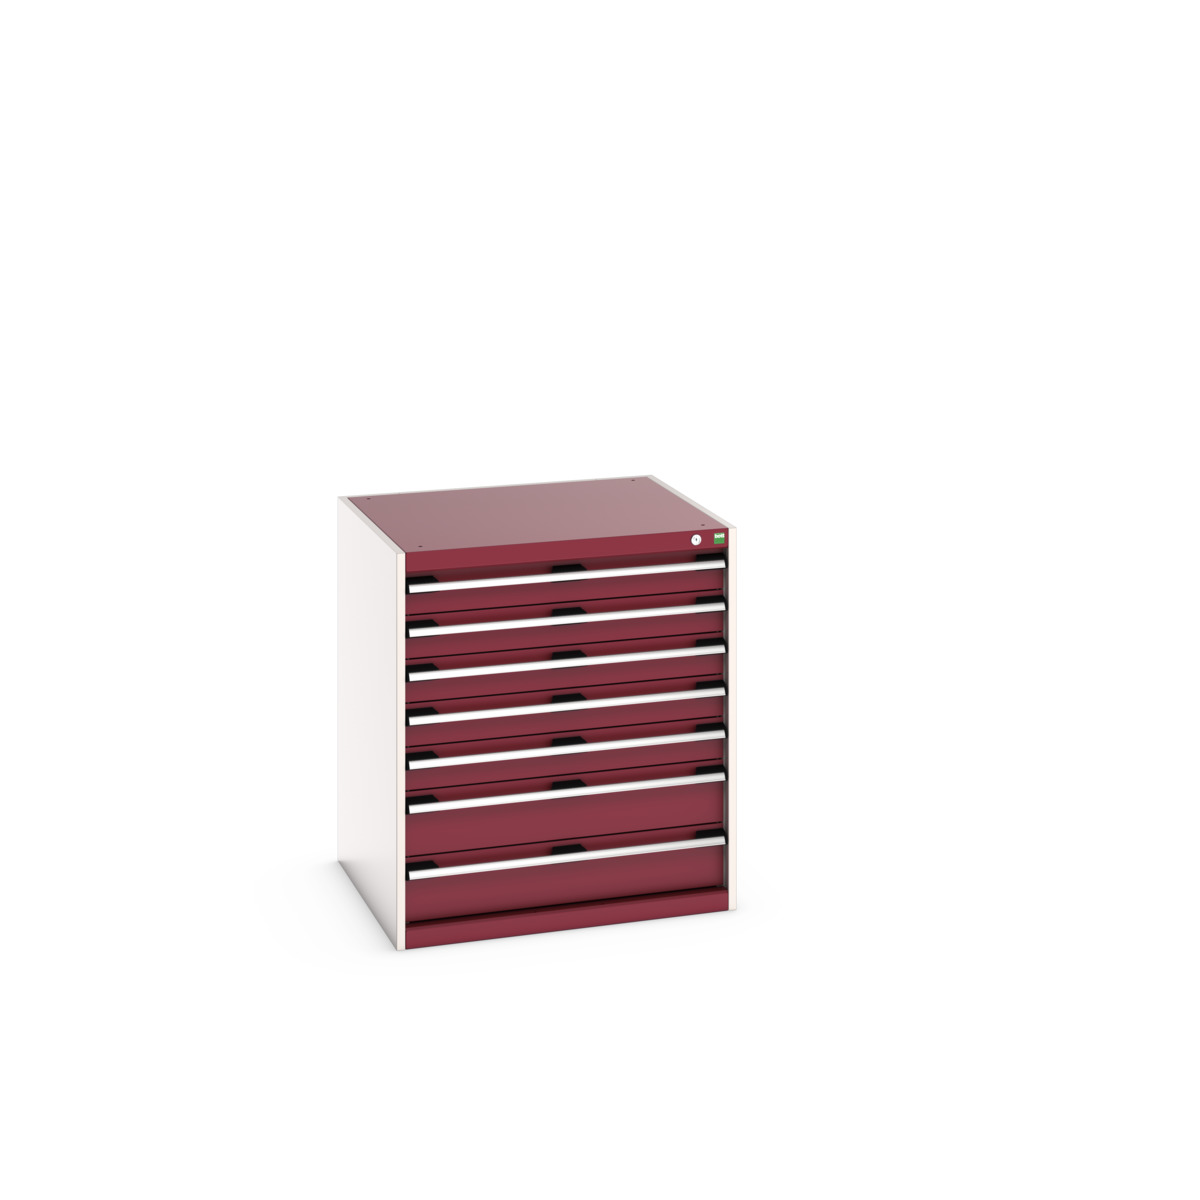 40028109.24V - cubio drawer cabinet